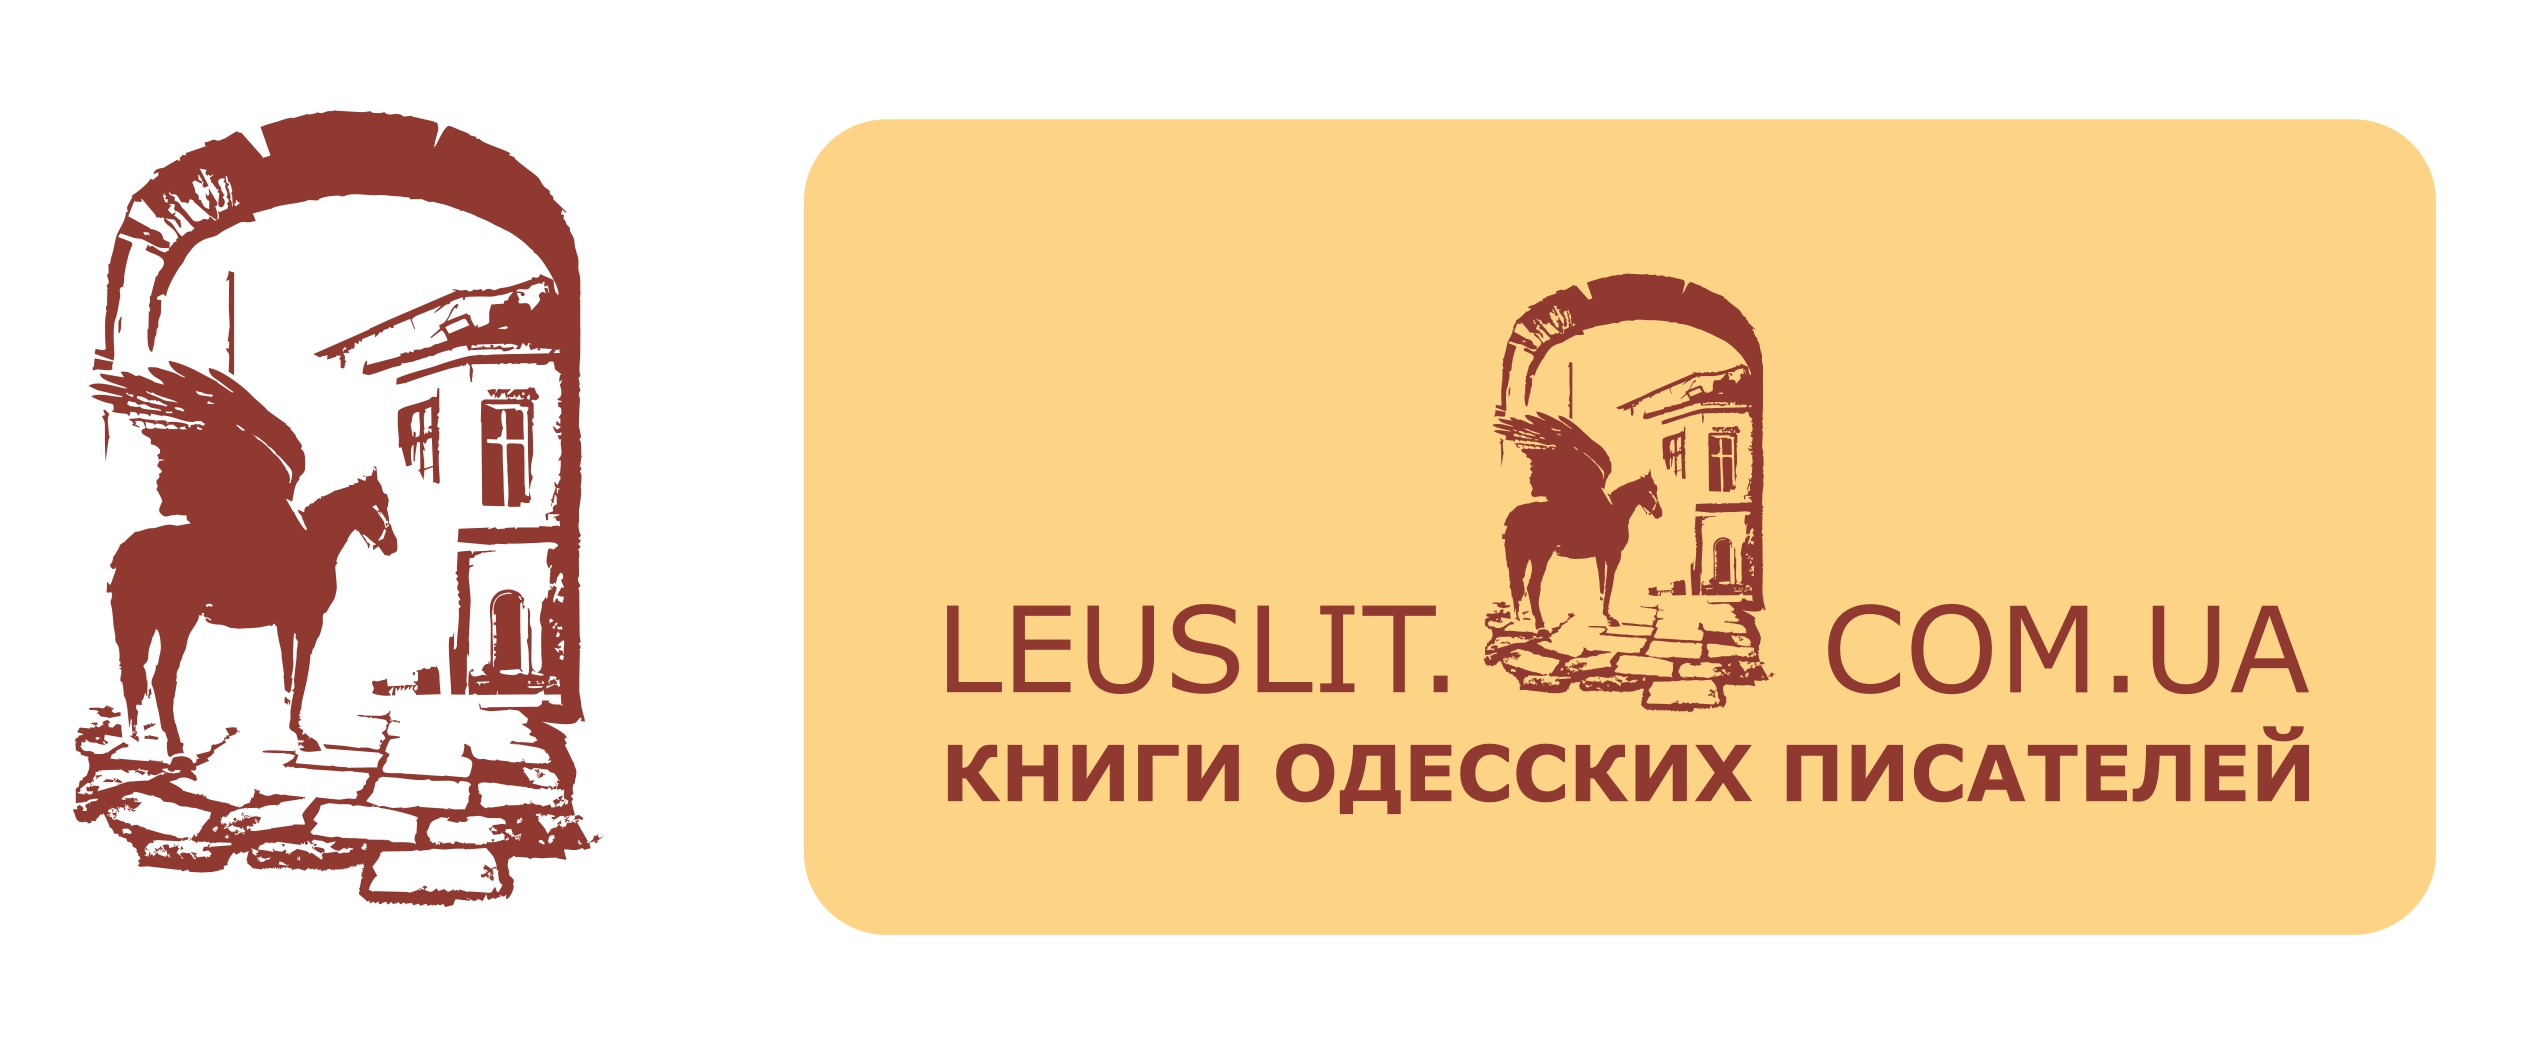 логотип литературного интернет-проекта